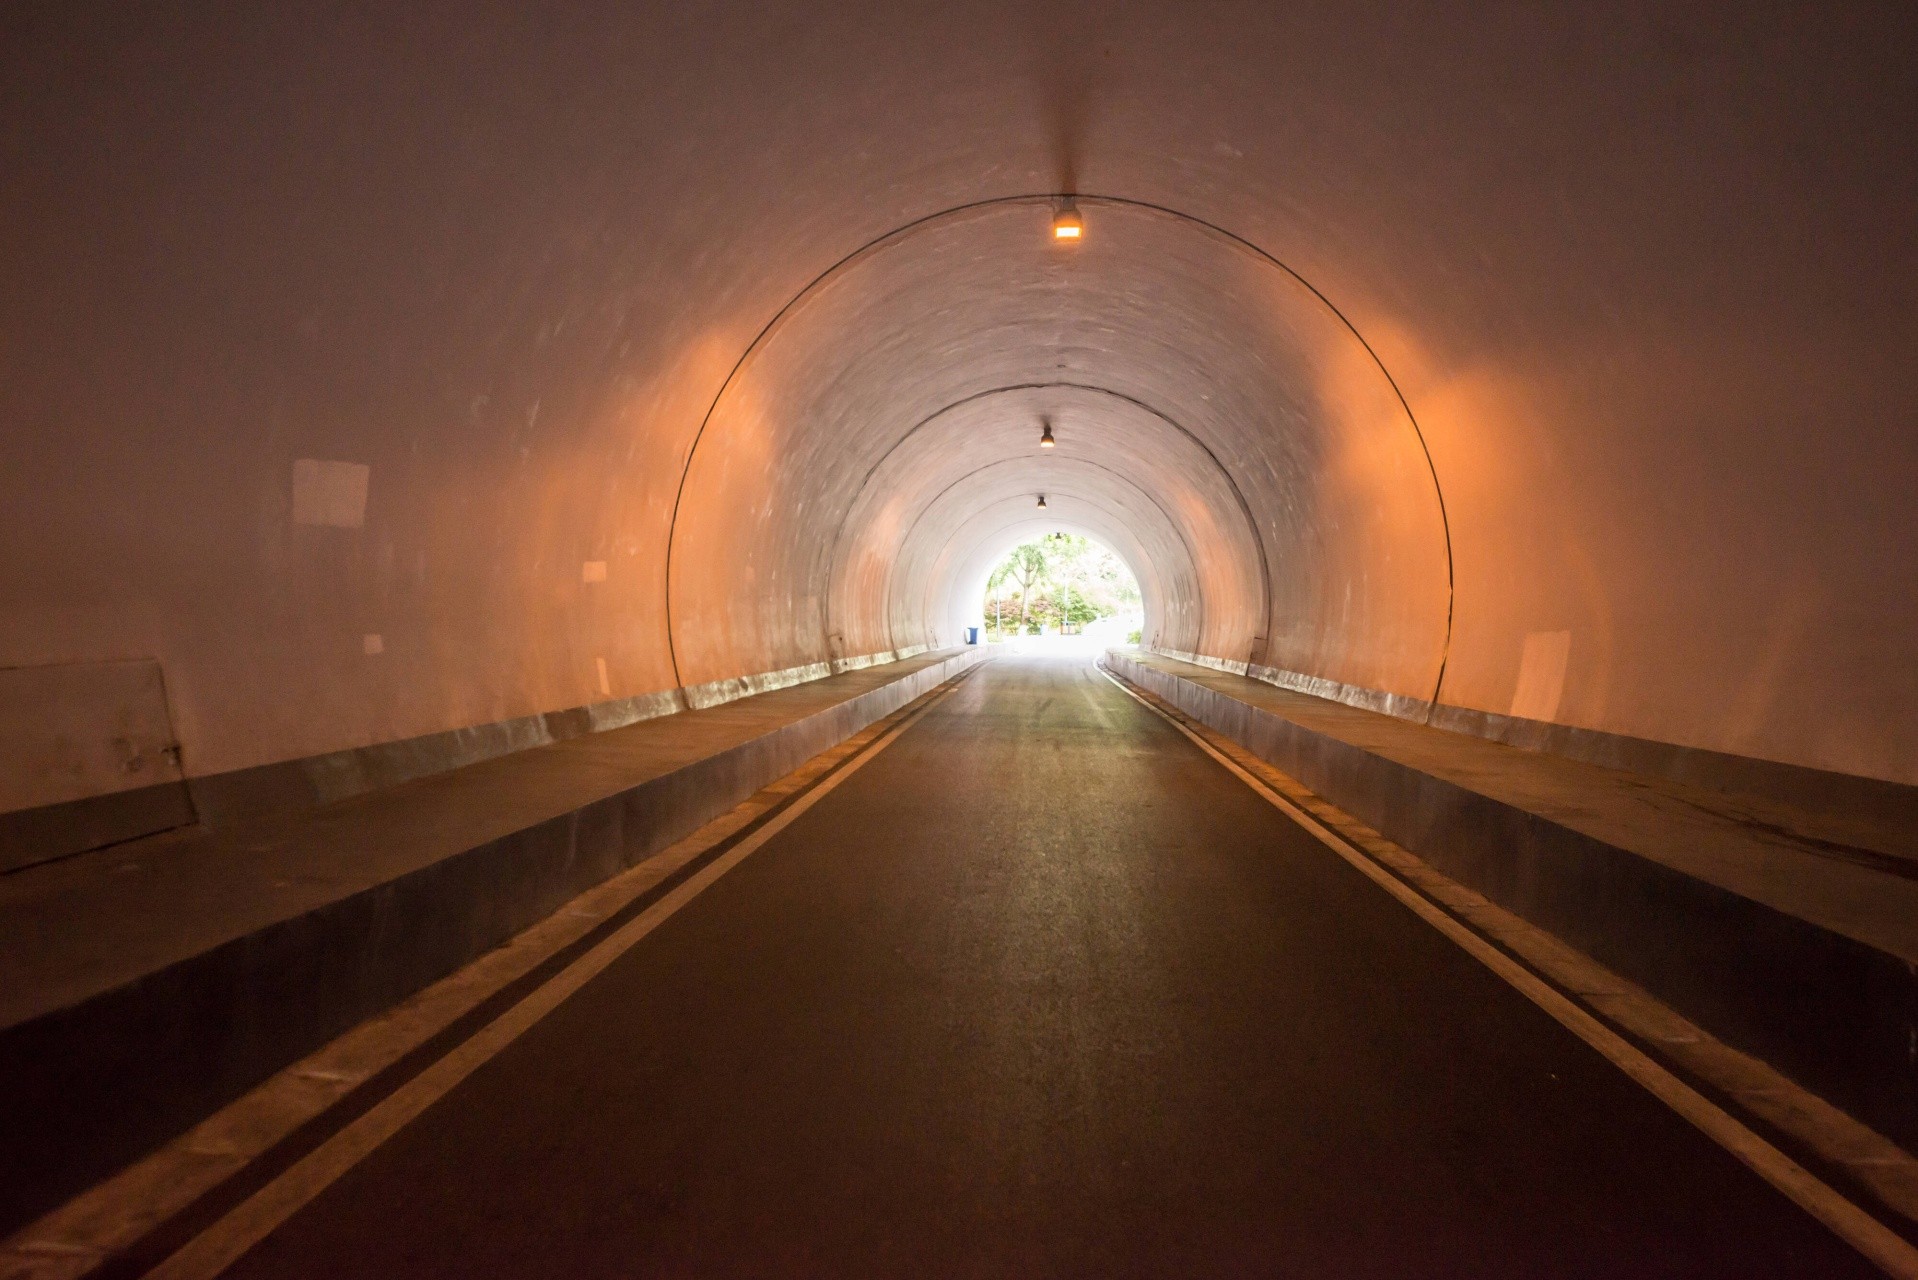 Petroskoissa suunnitellaan tunnelin rakentamista. Oletetaan, että se vähentäisi liikenneruuhkia kaupungin keskustassa. Kuva: kuvituskuva/freepik.com